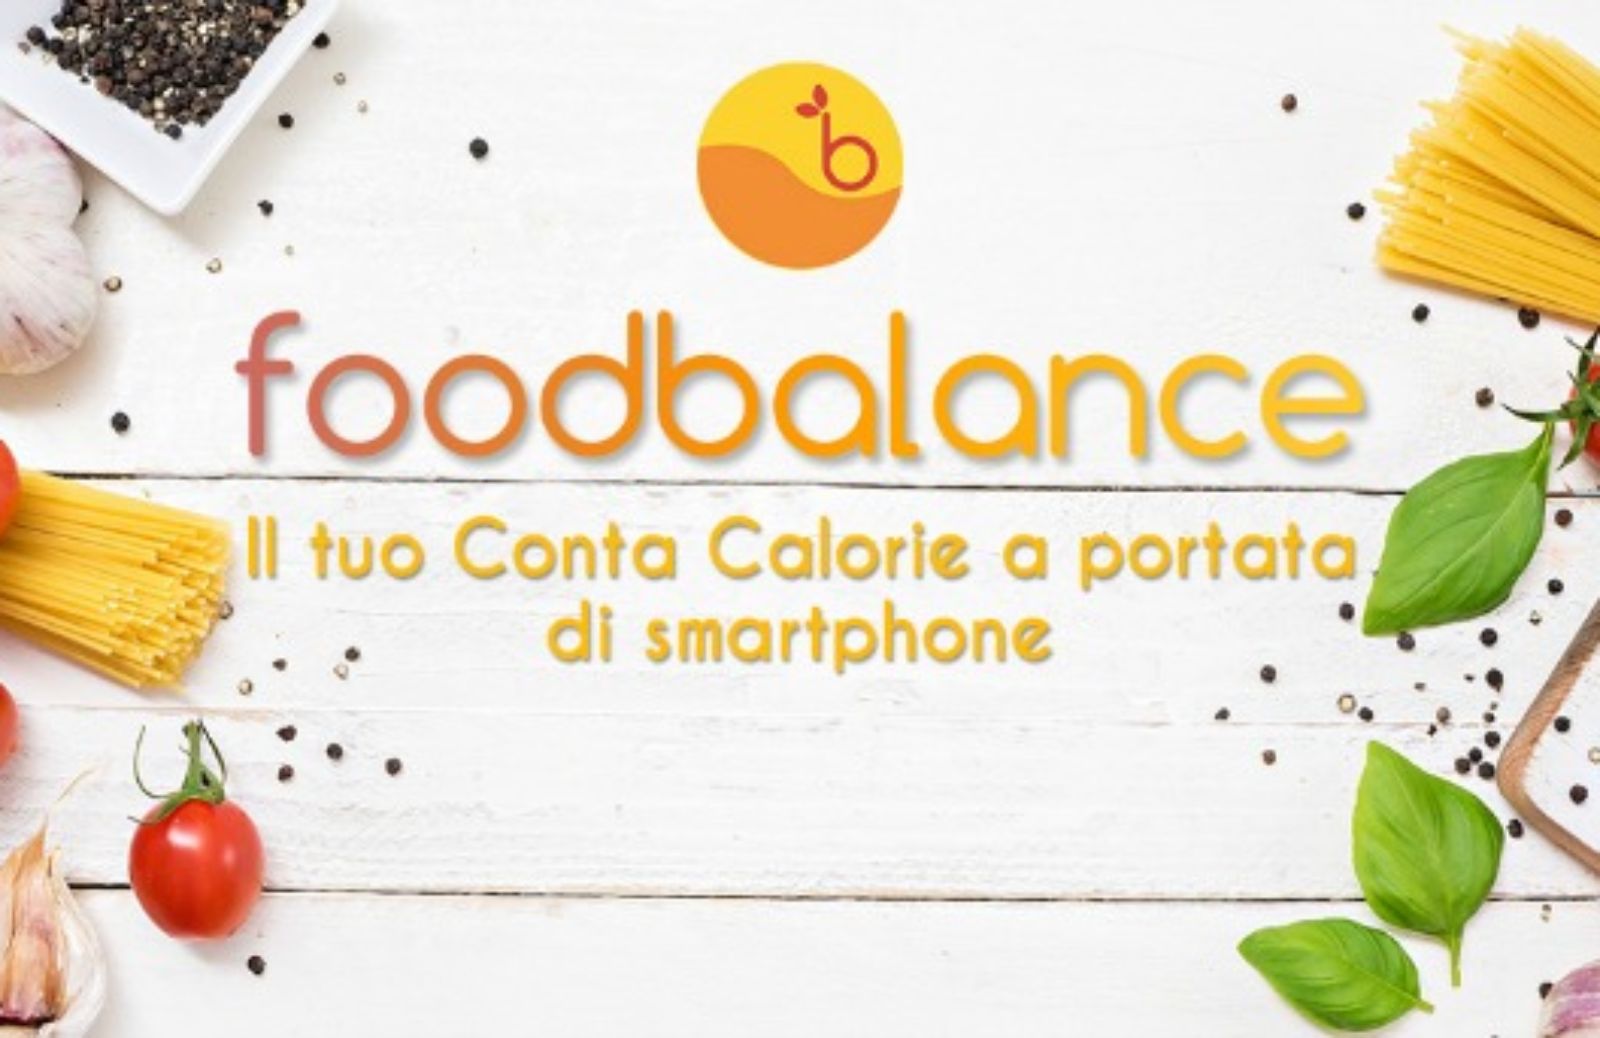 FoodBalance: è arrivata la app che conta le calorie delle ricette